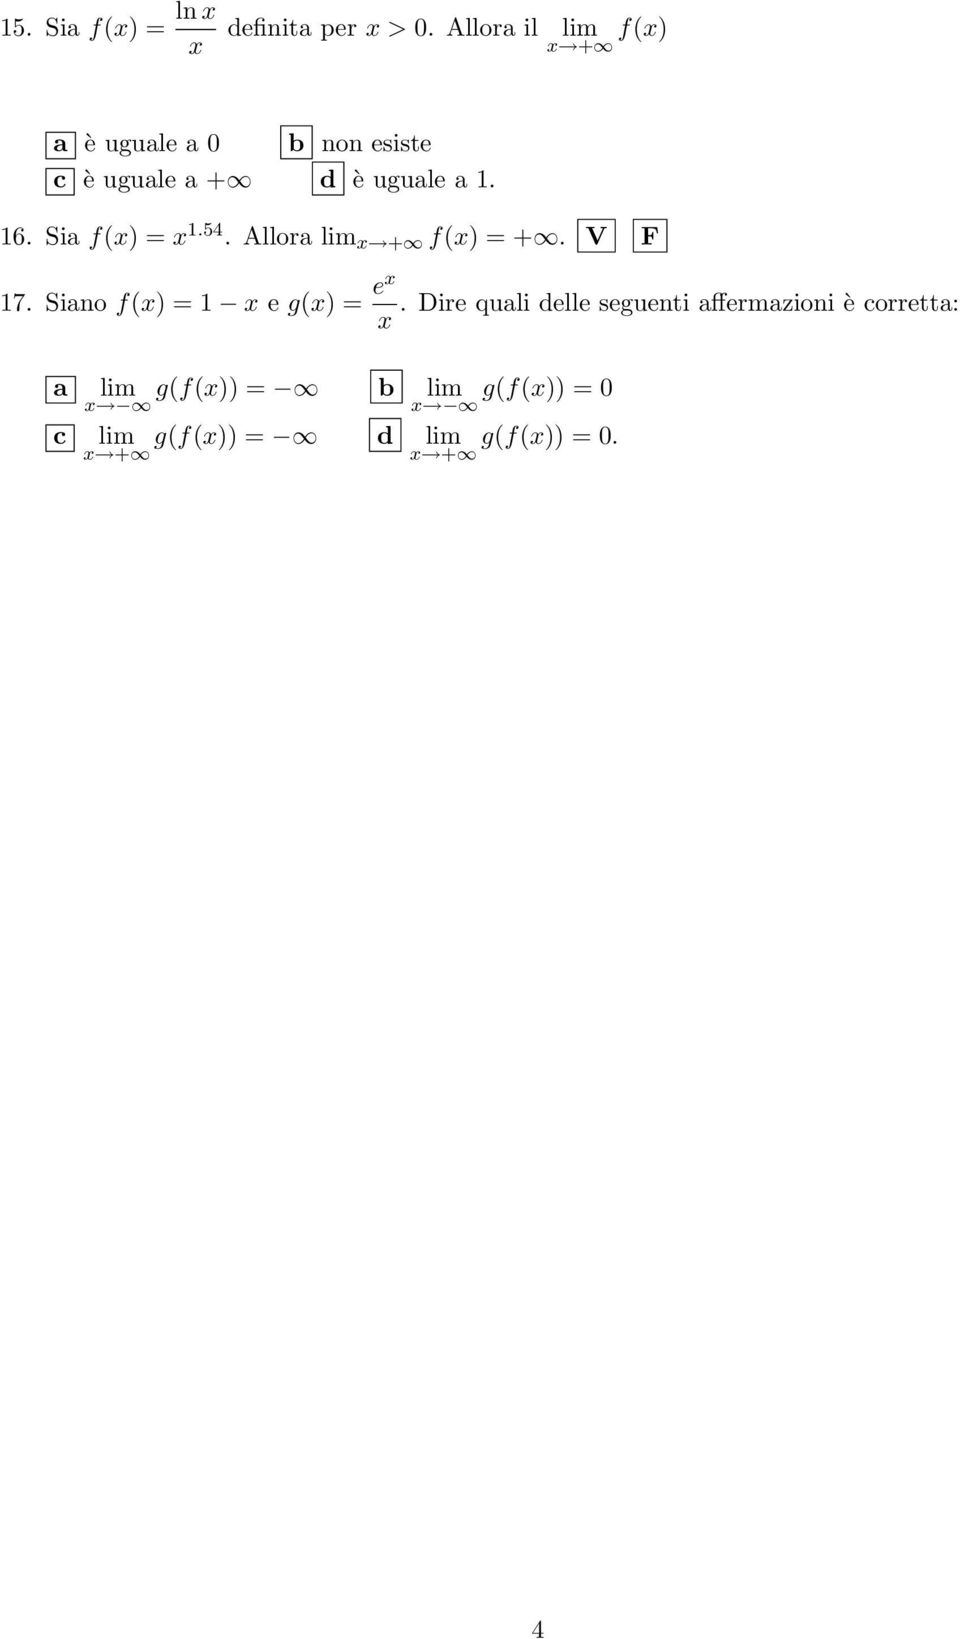 Sia f(x) = x.54. Allora lim x + f(x) = +. V F 7. Siano f(x) = x e g(x) = ex.